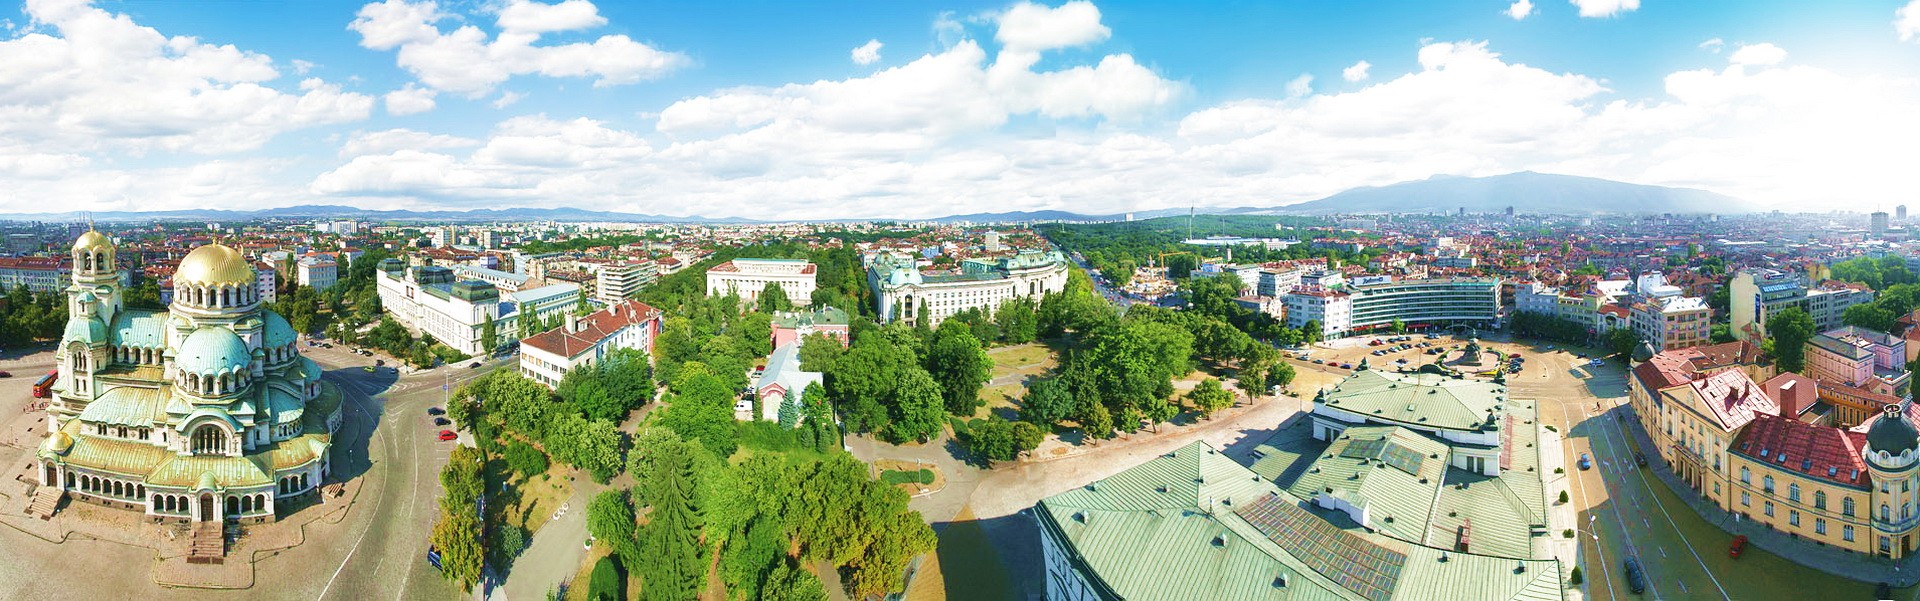 Панорама столицы Республики Болгария Софии